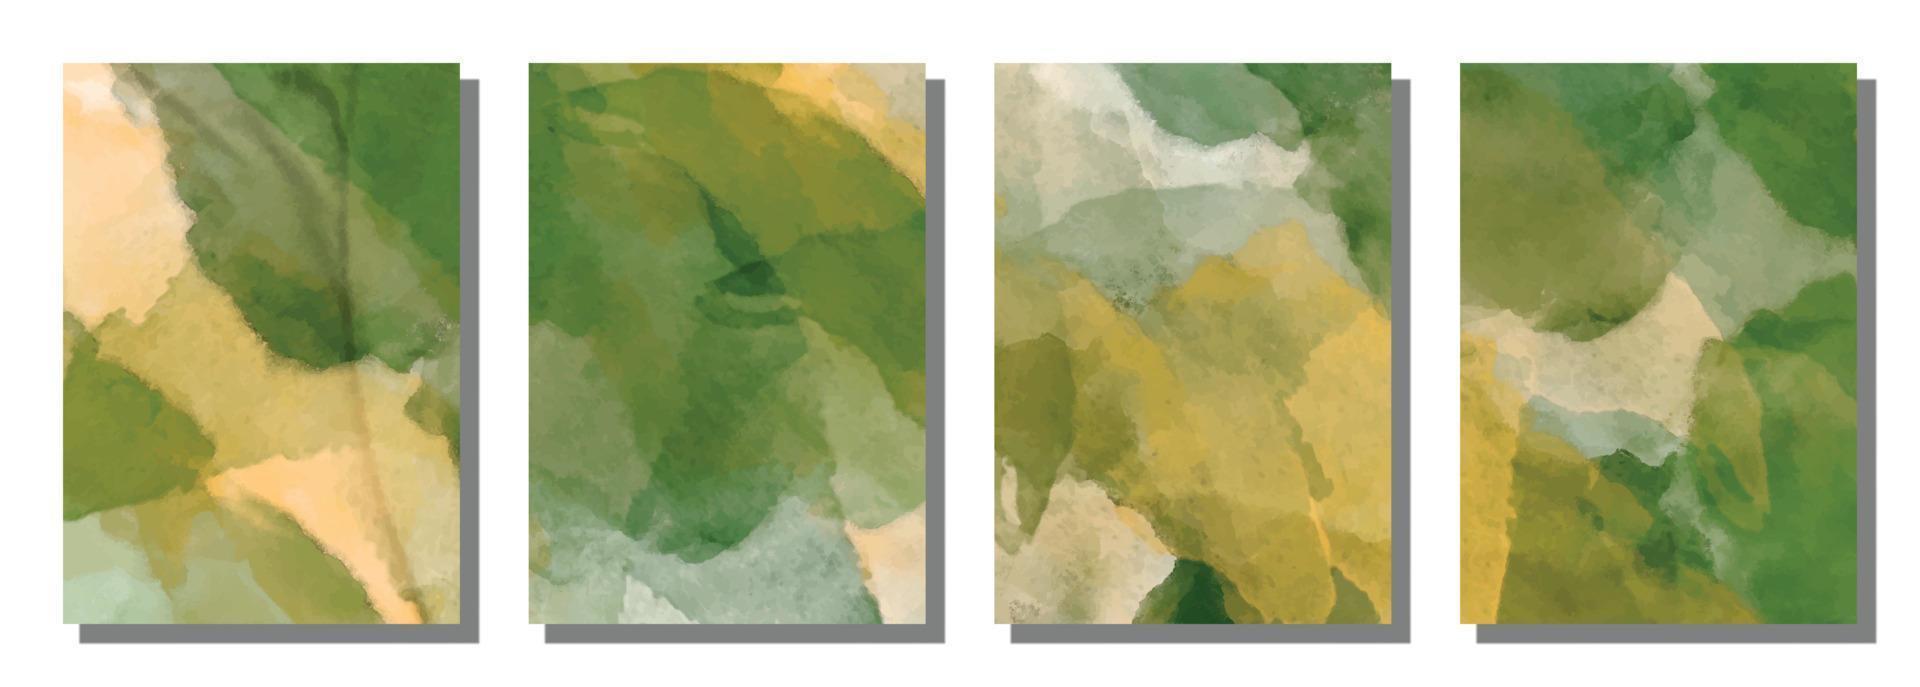 abstrakter aquarellbürstenhintergrund. vektor